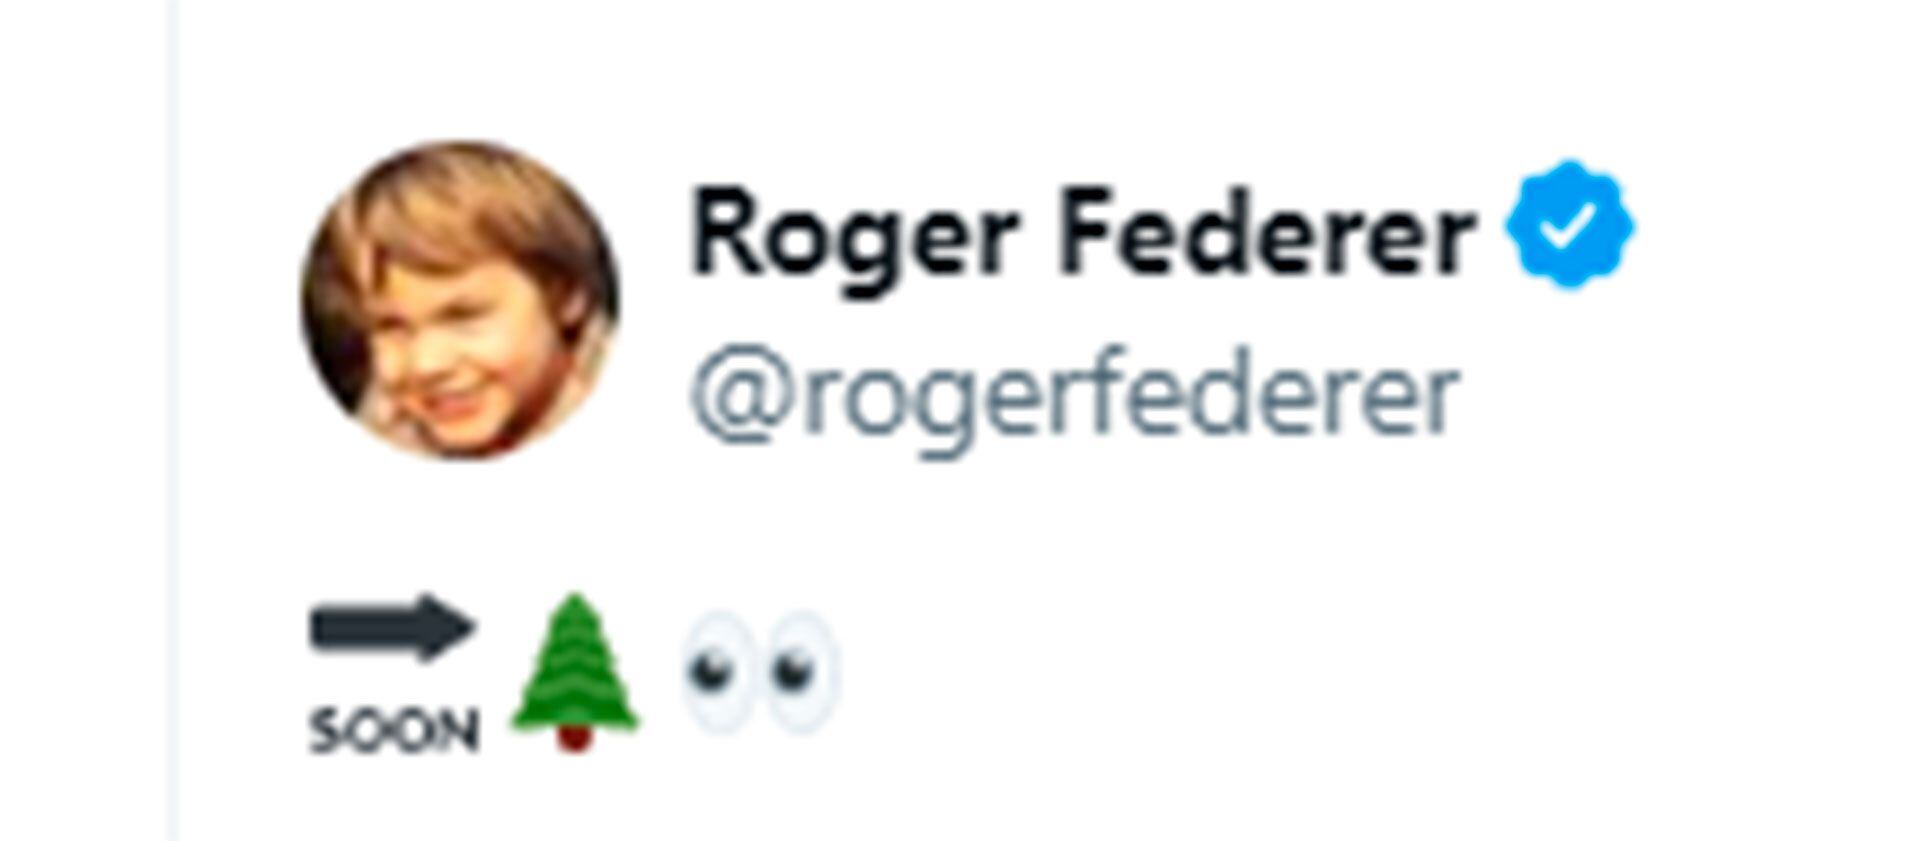 Federer post